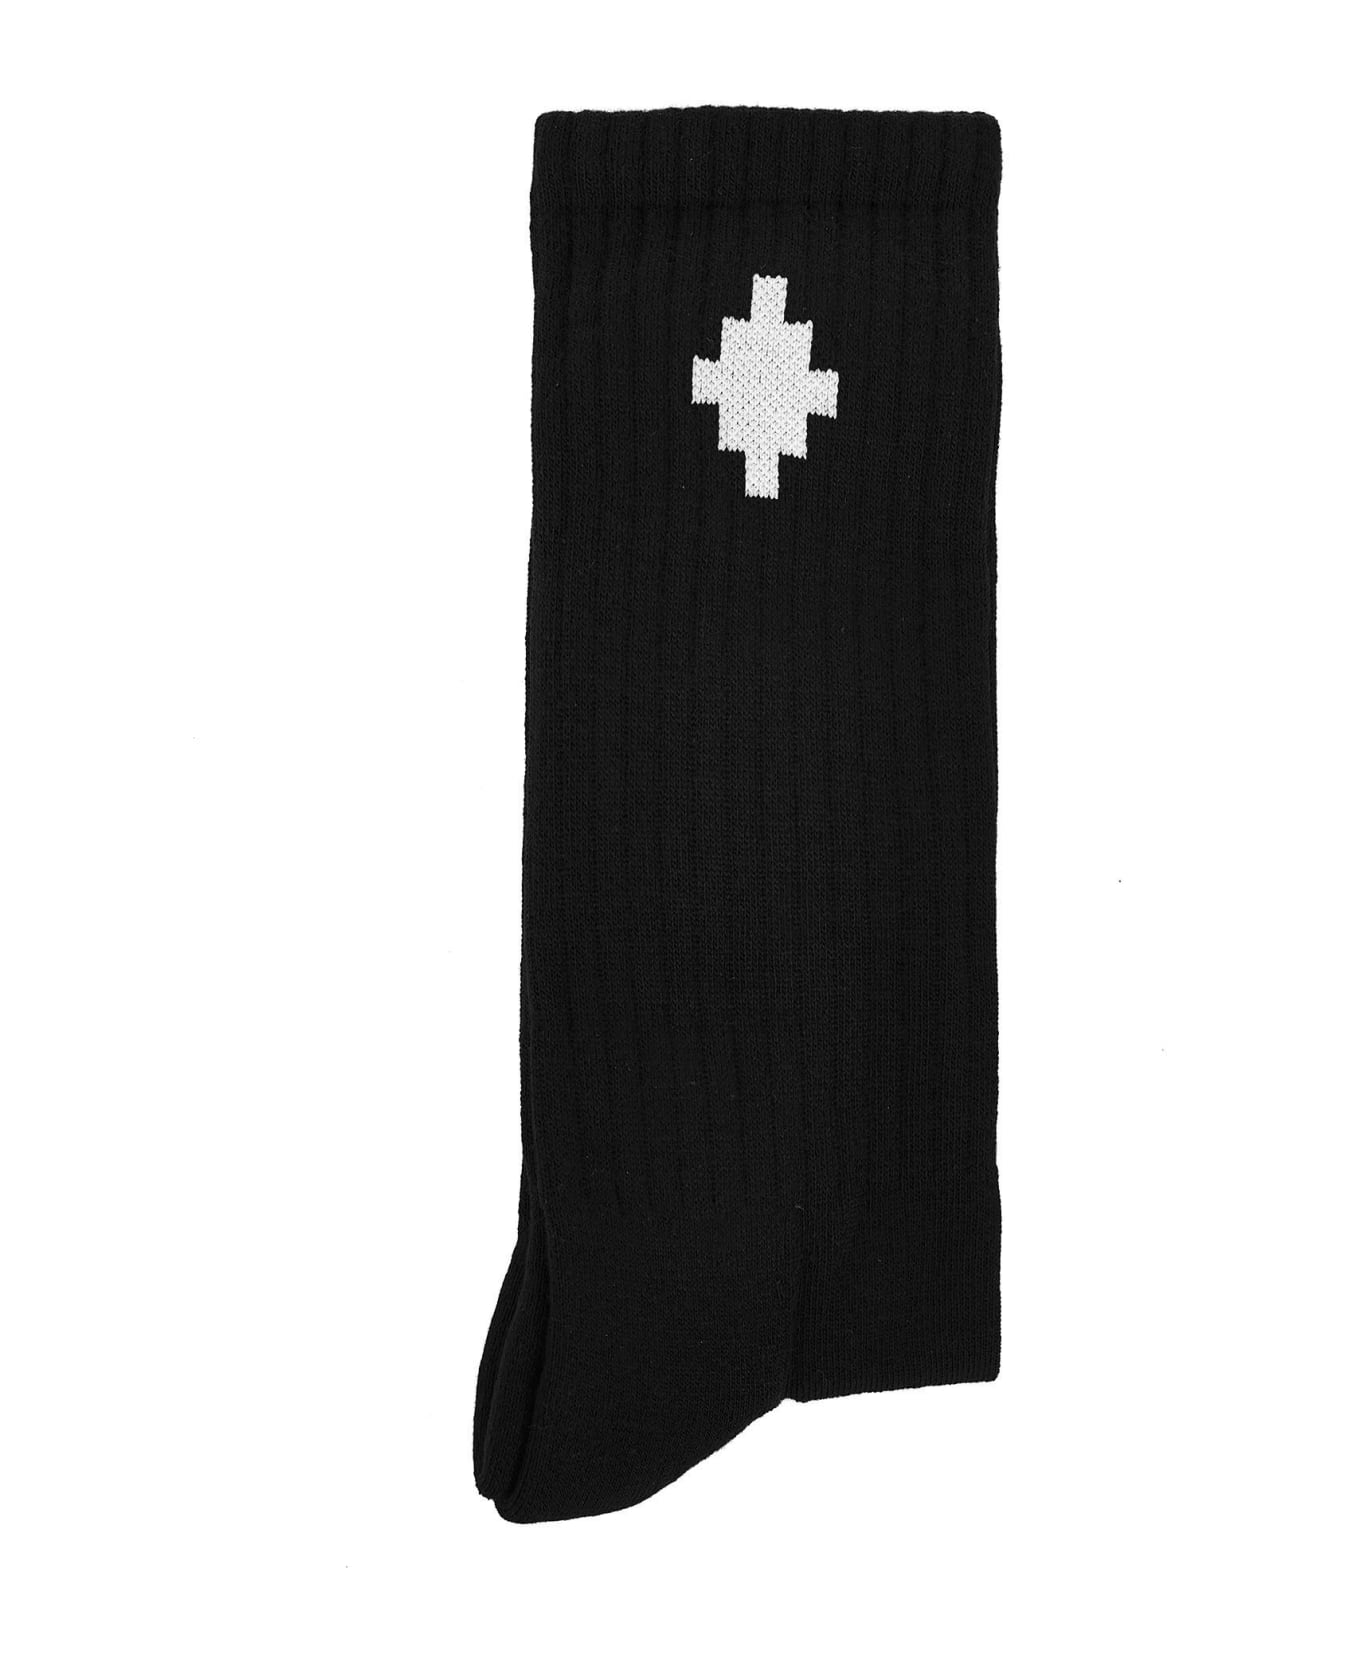 Marcelo Burlon Cross Socks - Nero bianco